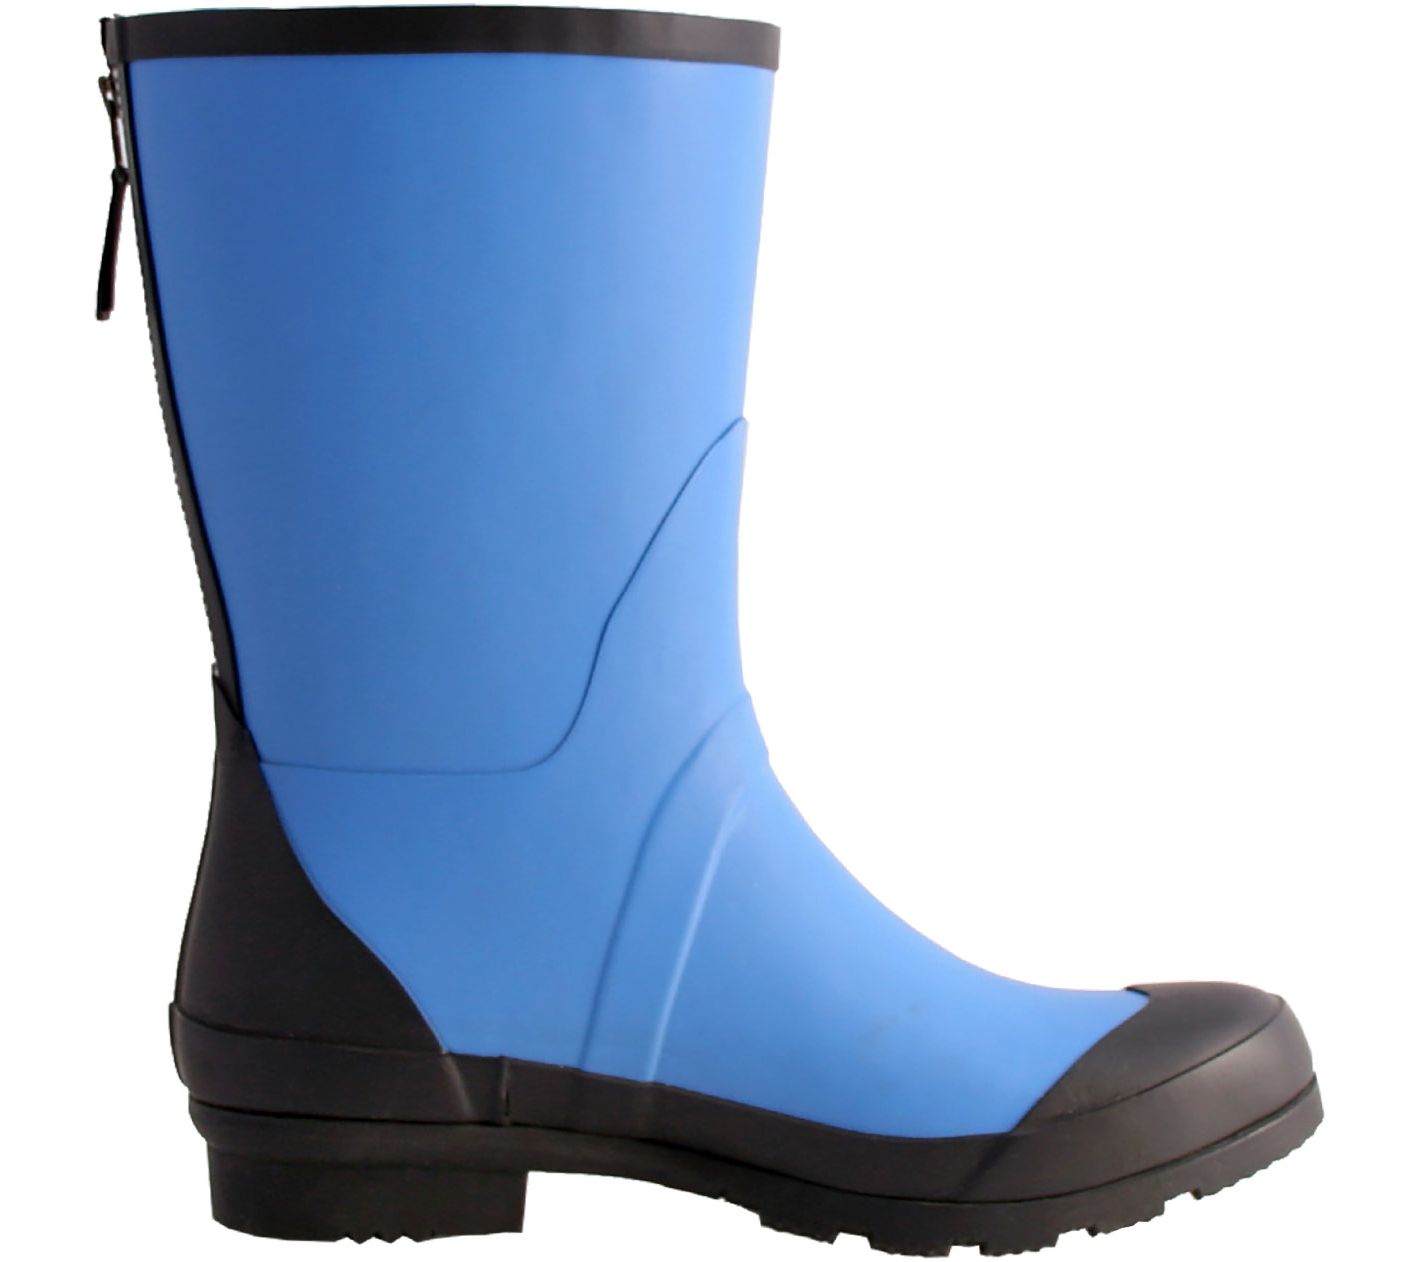 Nomad Rubber Rain Boots - London - QVC.com